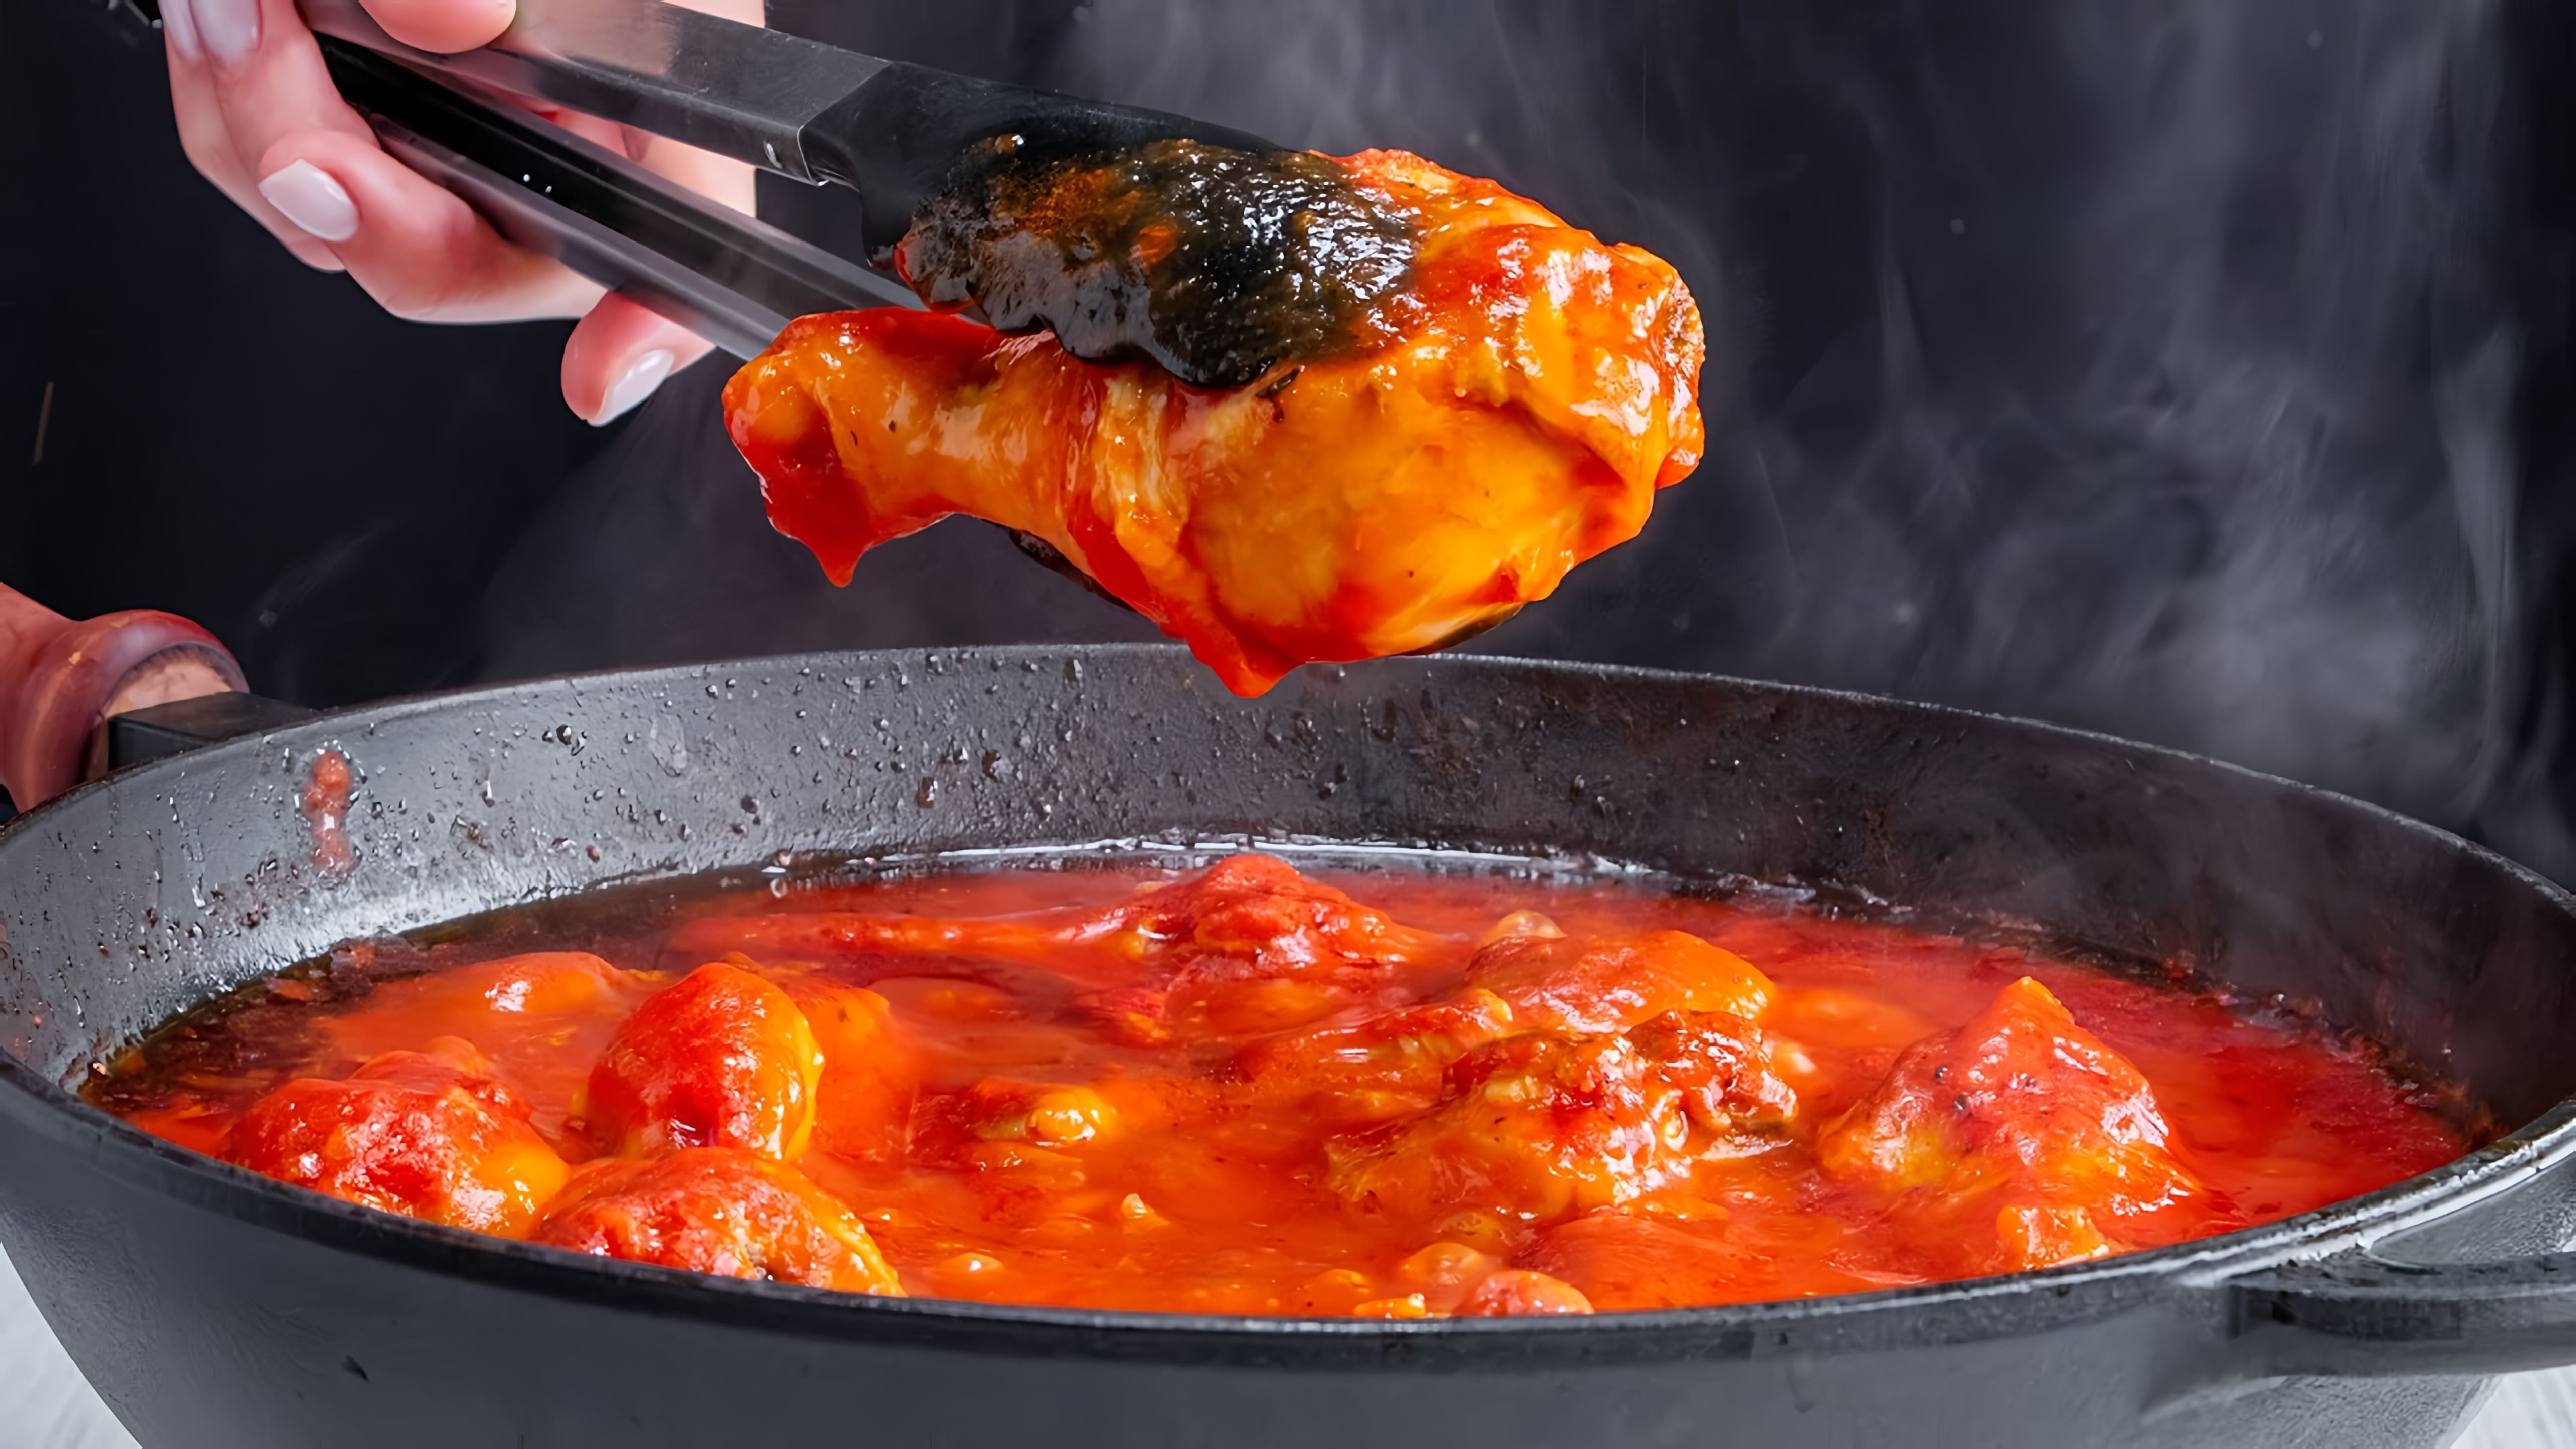 Новый способ приготовления мяса - сочные и нежные куриные ножки в томатной соусе

В этом видео-ролике вы увидите, как приготовить вкусное и ароматное блюдо - куриные ножки в томатном соусе